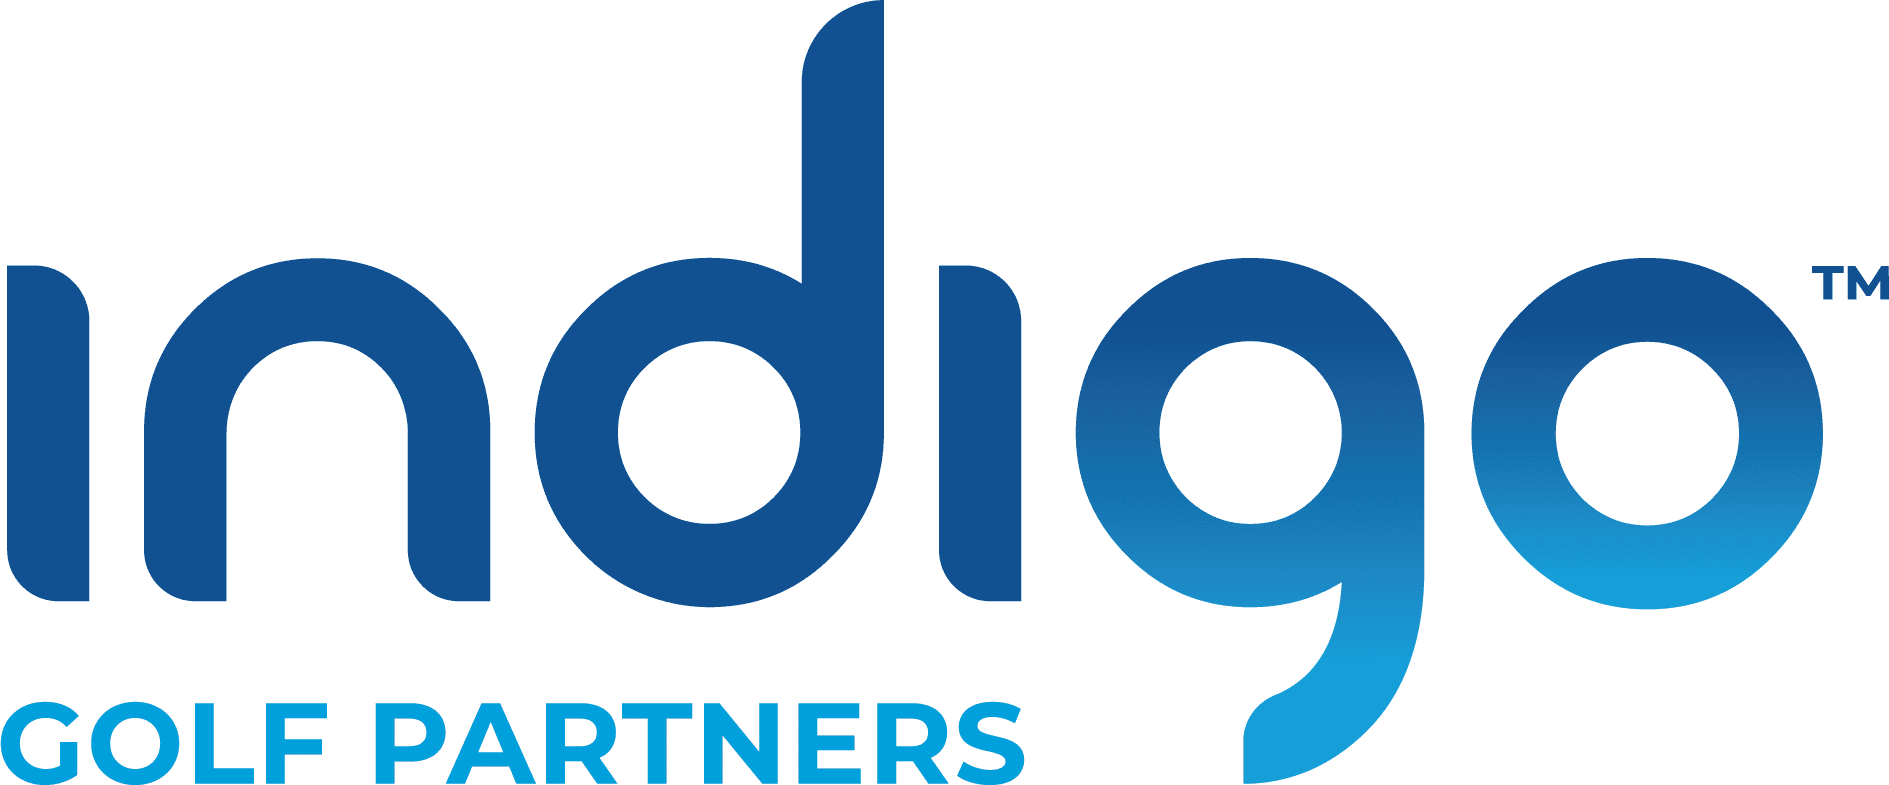 Indigo Golf Partners | Troon.com